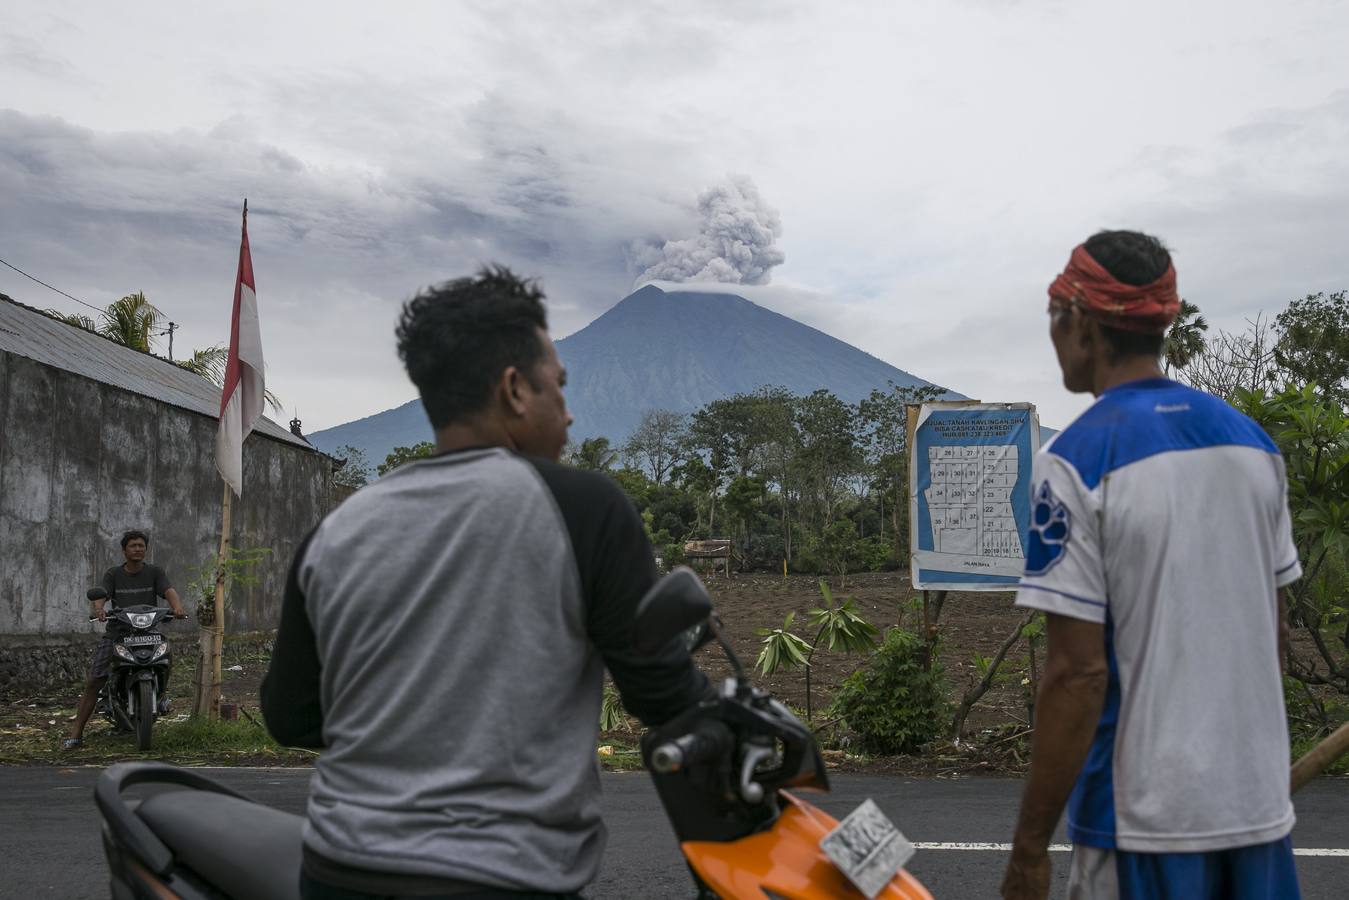 El volcán Monte Agung arroja ceniza volcánica caliente en Karangasem, Bali (Indonesia). Según informes de medios, la junta nacional de gestión de desastres de Indonesia elevó la alerta para el volcán al estado más alto y cerró el aeropuerto internacional Ngurah Rai en Bali debido a la nube de cenizas.